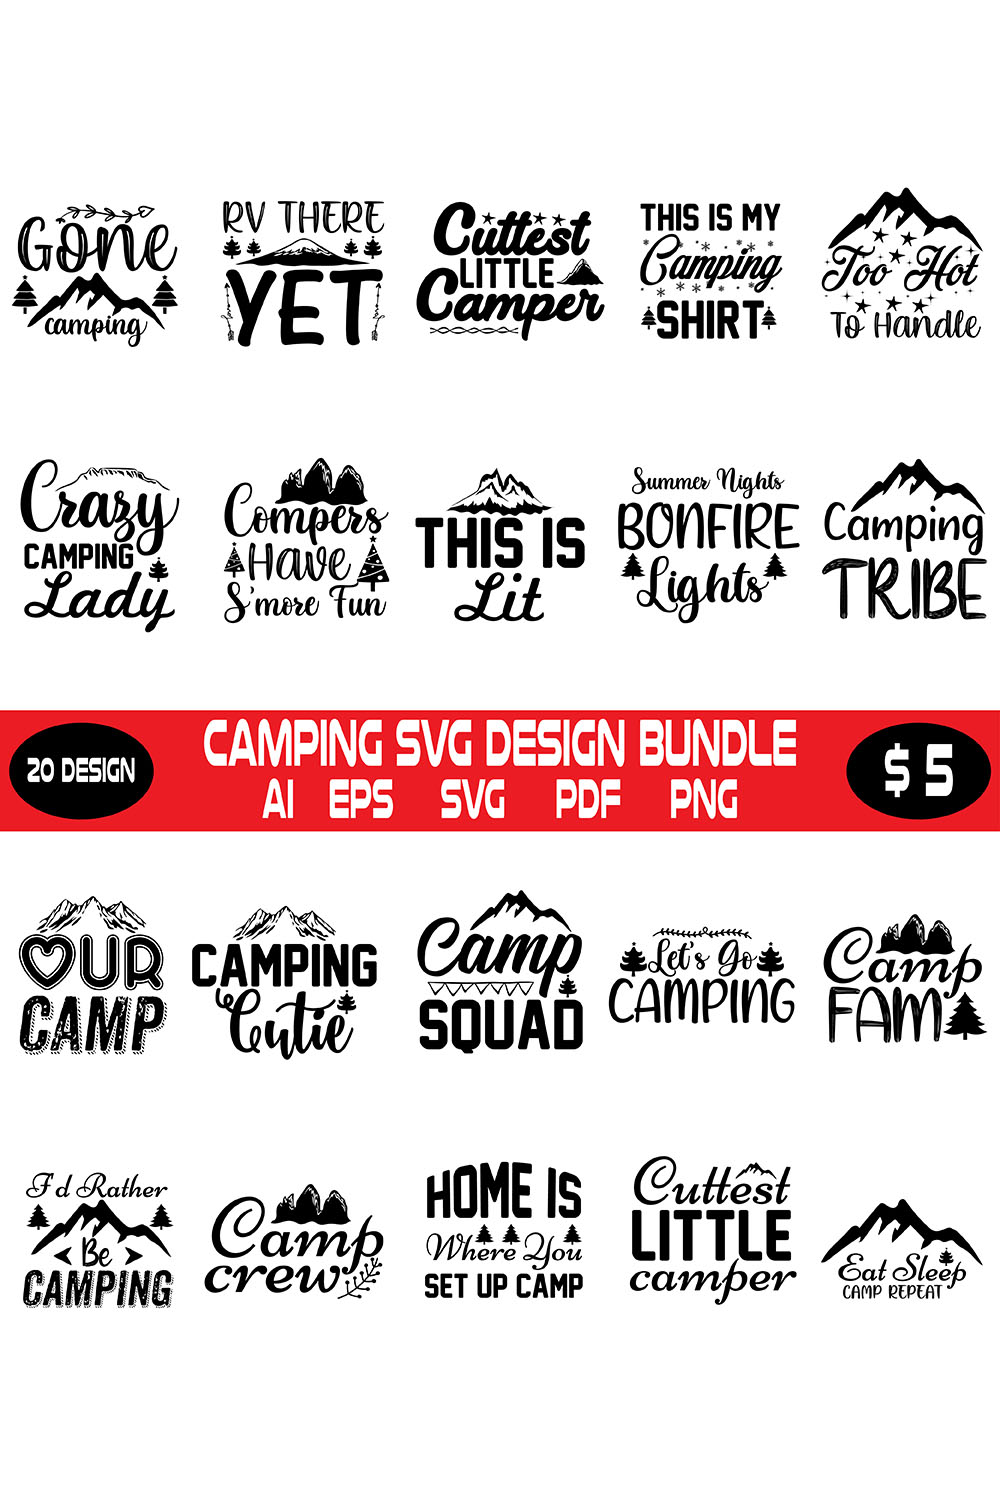 Camping Svg Design Bundle pinterest preview image.